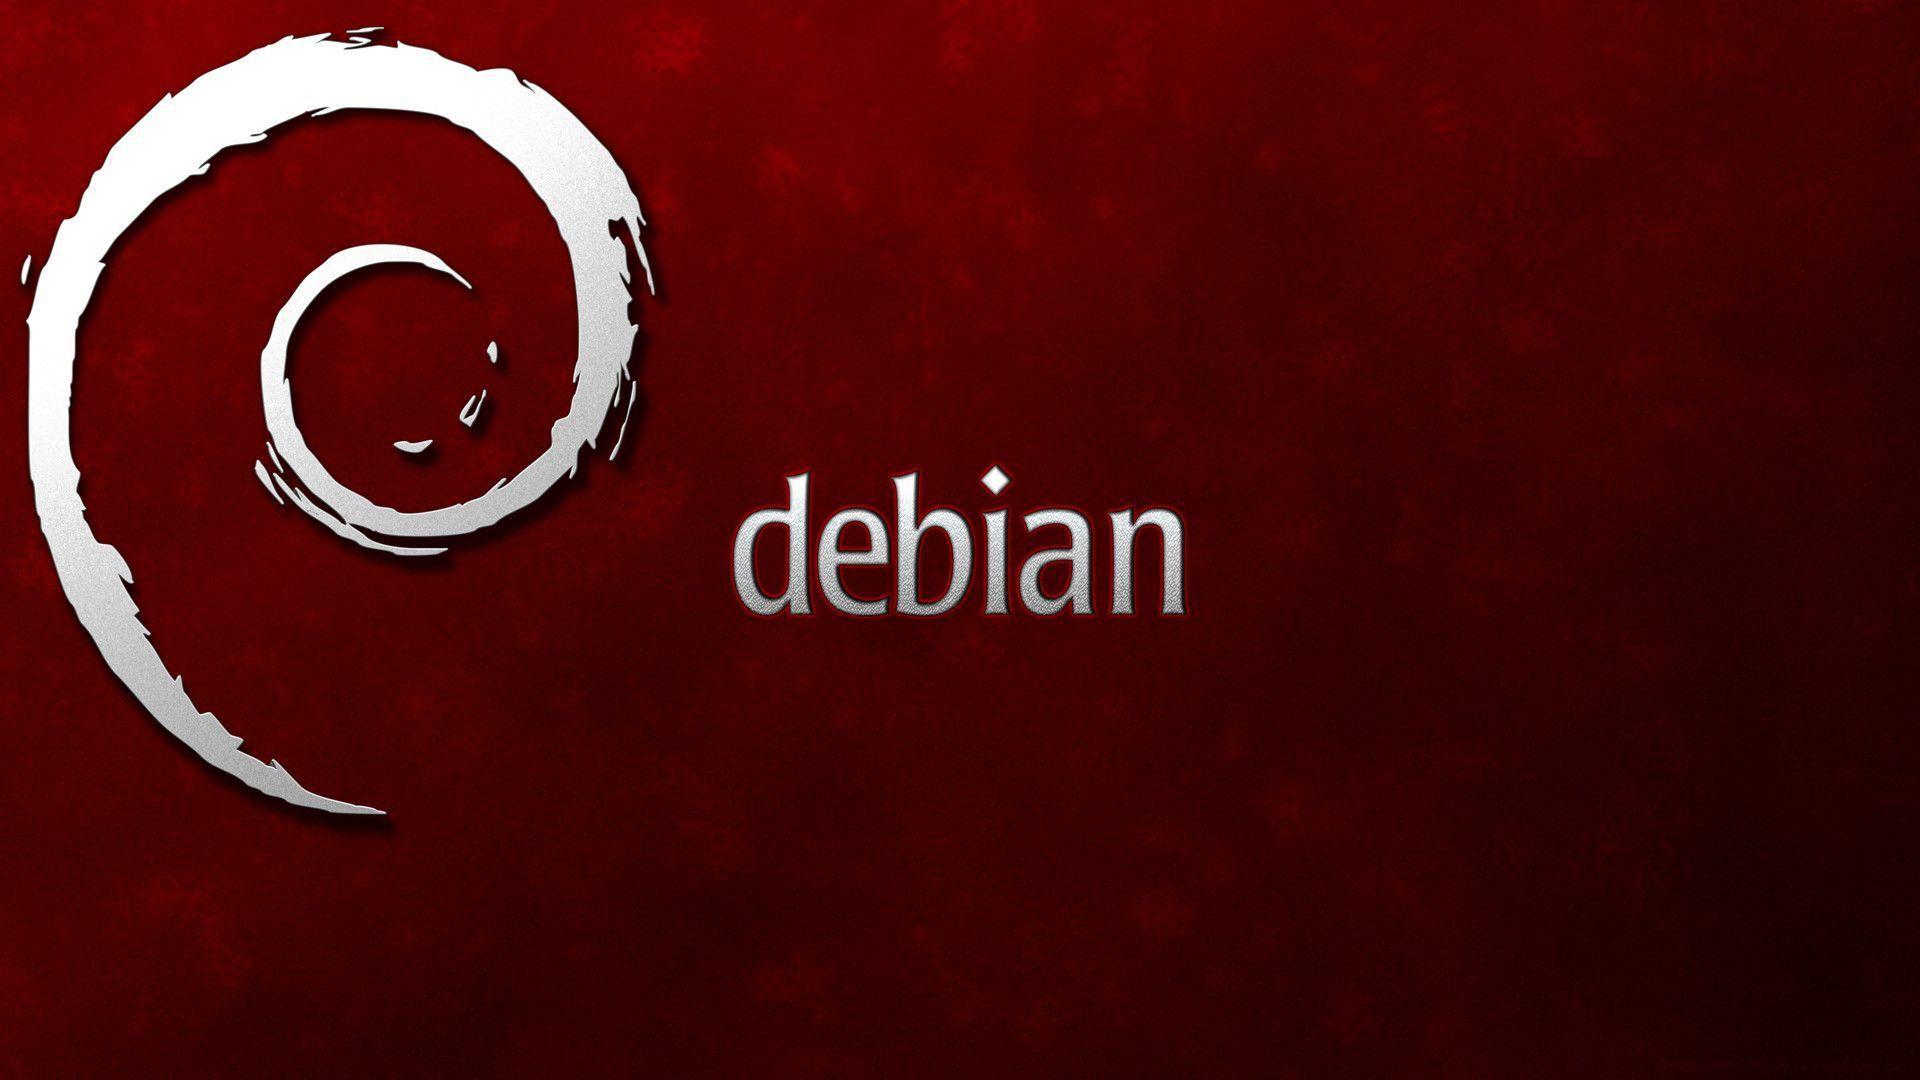 Debian Wallpaper 1920x1080